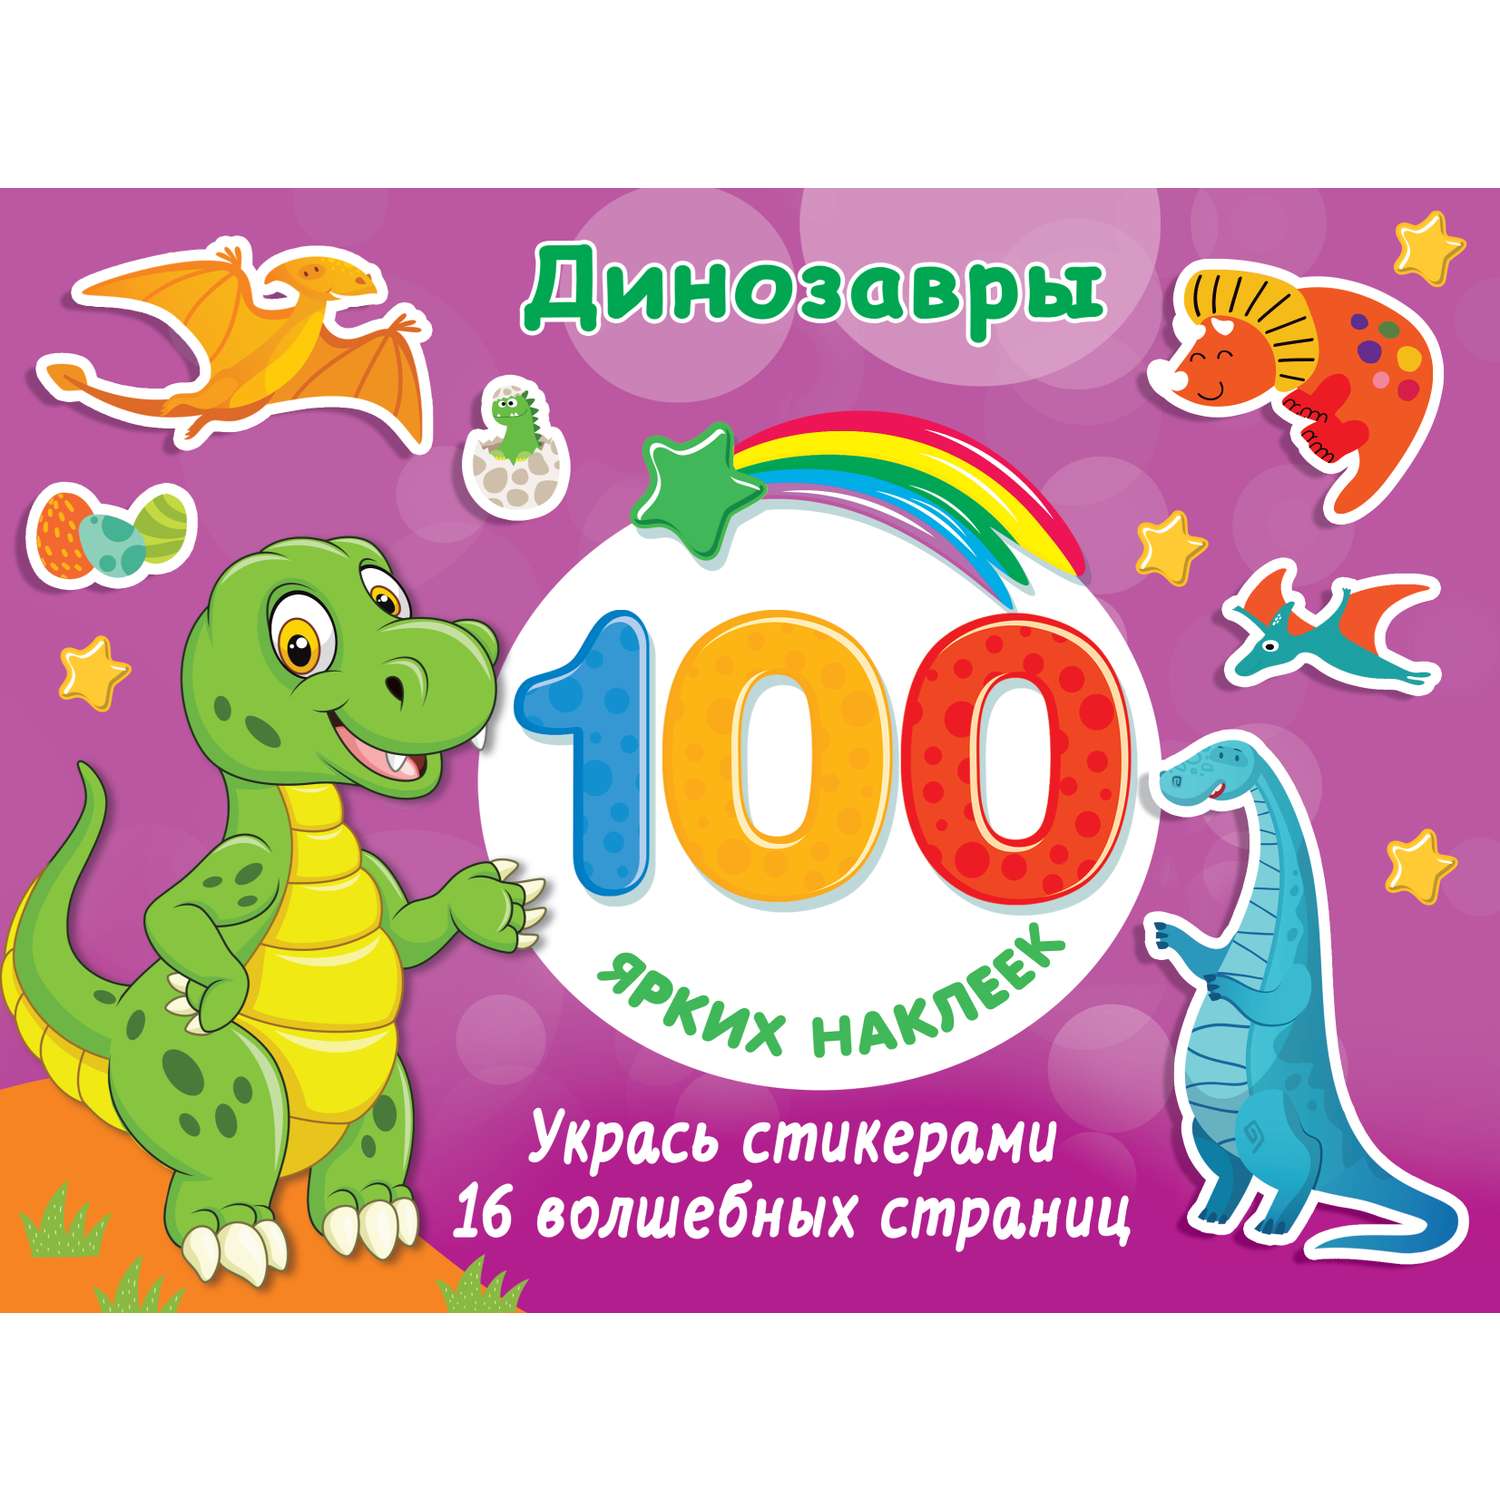 Книга АСТ 100 ярких наклеек Динозавры - фото 1